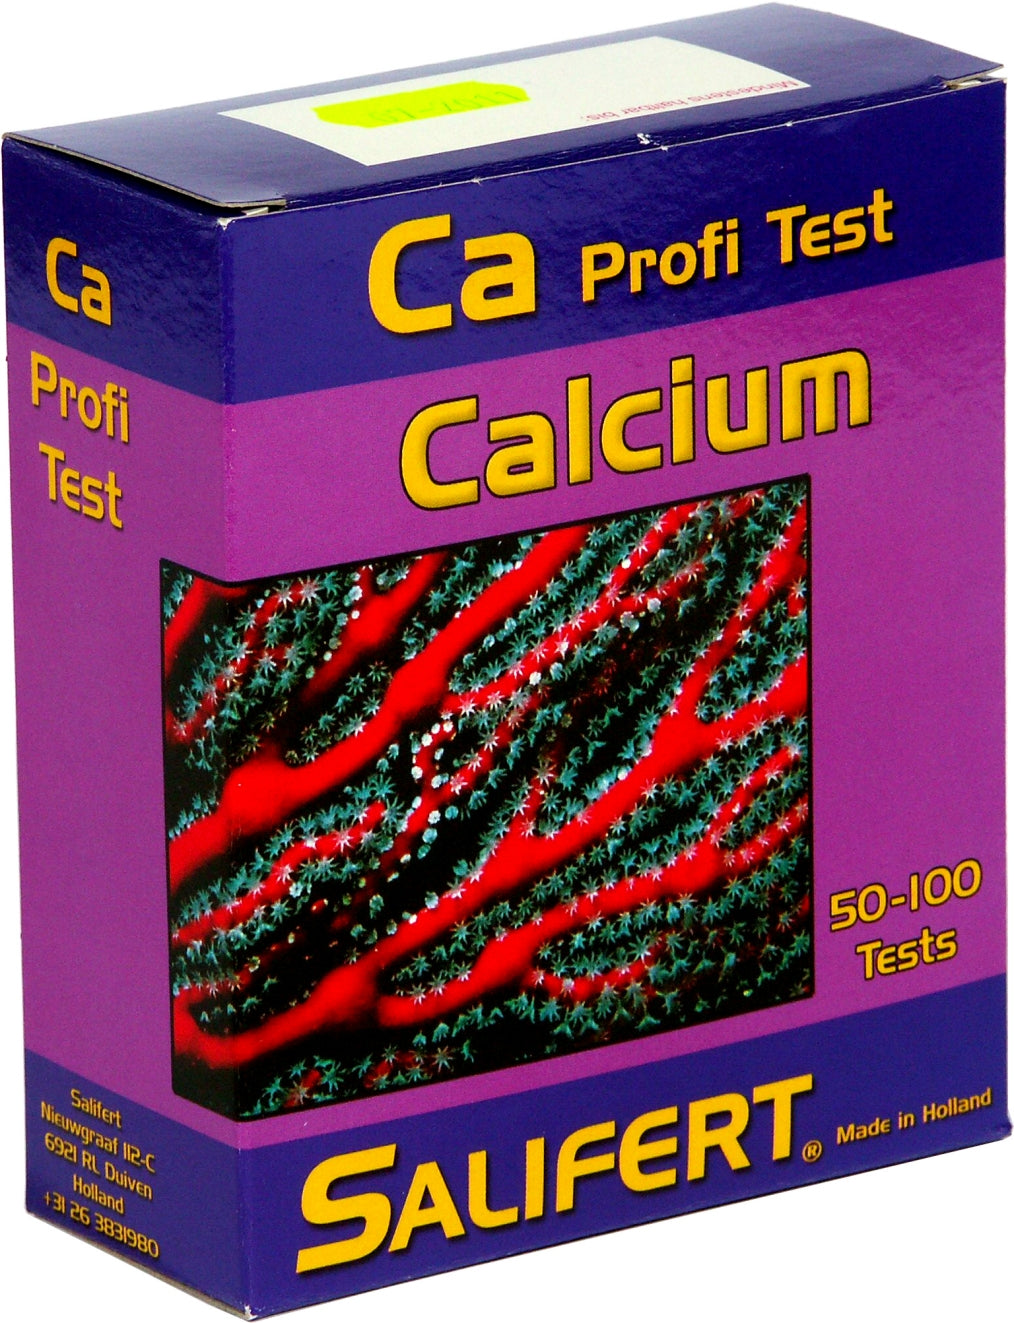 Salifert Calcium Ca Profi test available at Coral Passion in Essex